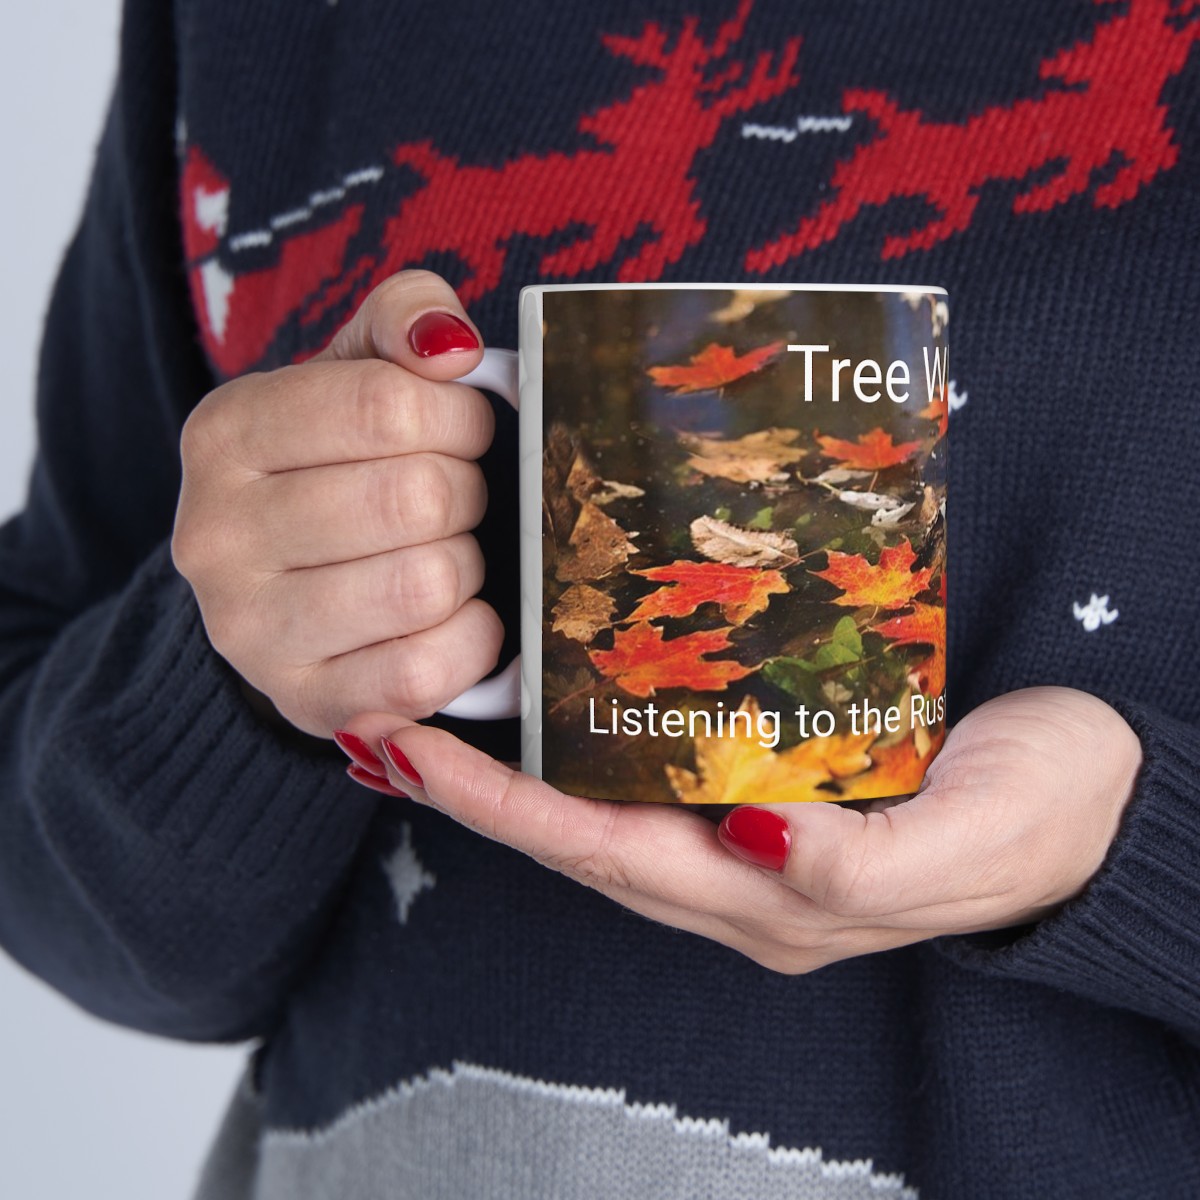 Tree Whisperer: Listening to the Rustle of Ancestral Leaves - Genealogy Ceramic Mug 11oz product thumbnail image